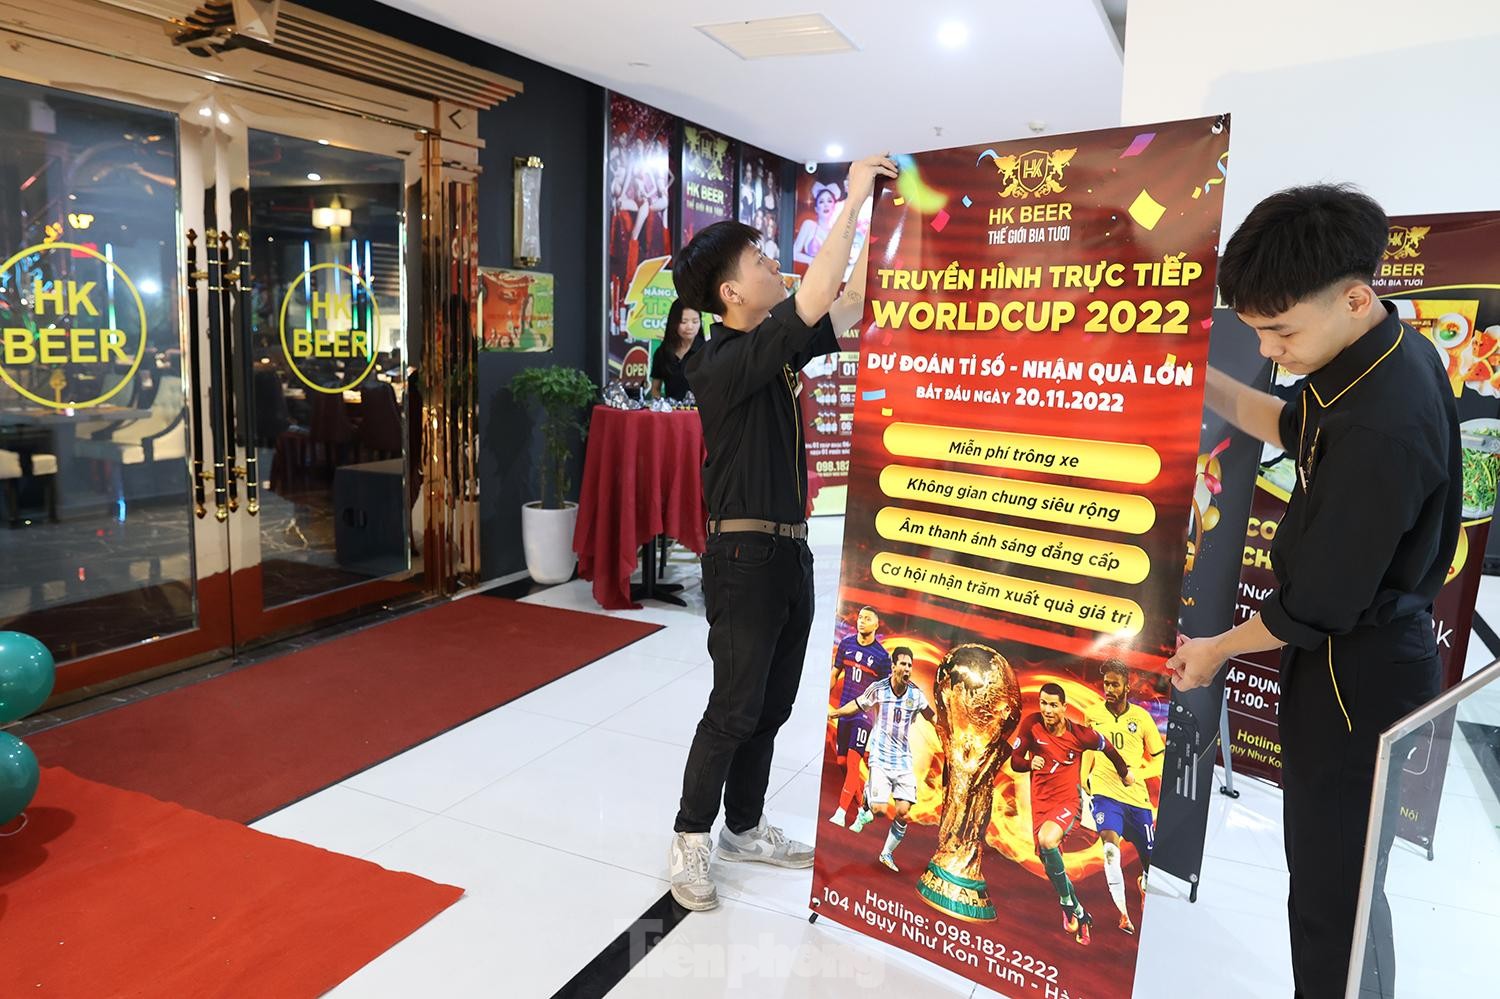 Hà Nội: Hàng quán chuẩn bị màn hình lớn phục vụ World Cup 2022 - Ảnh 1.